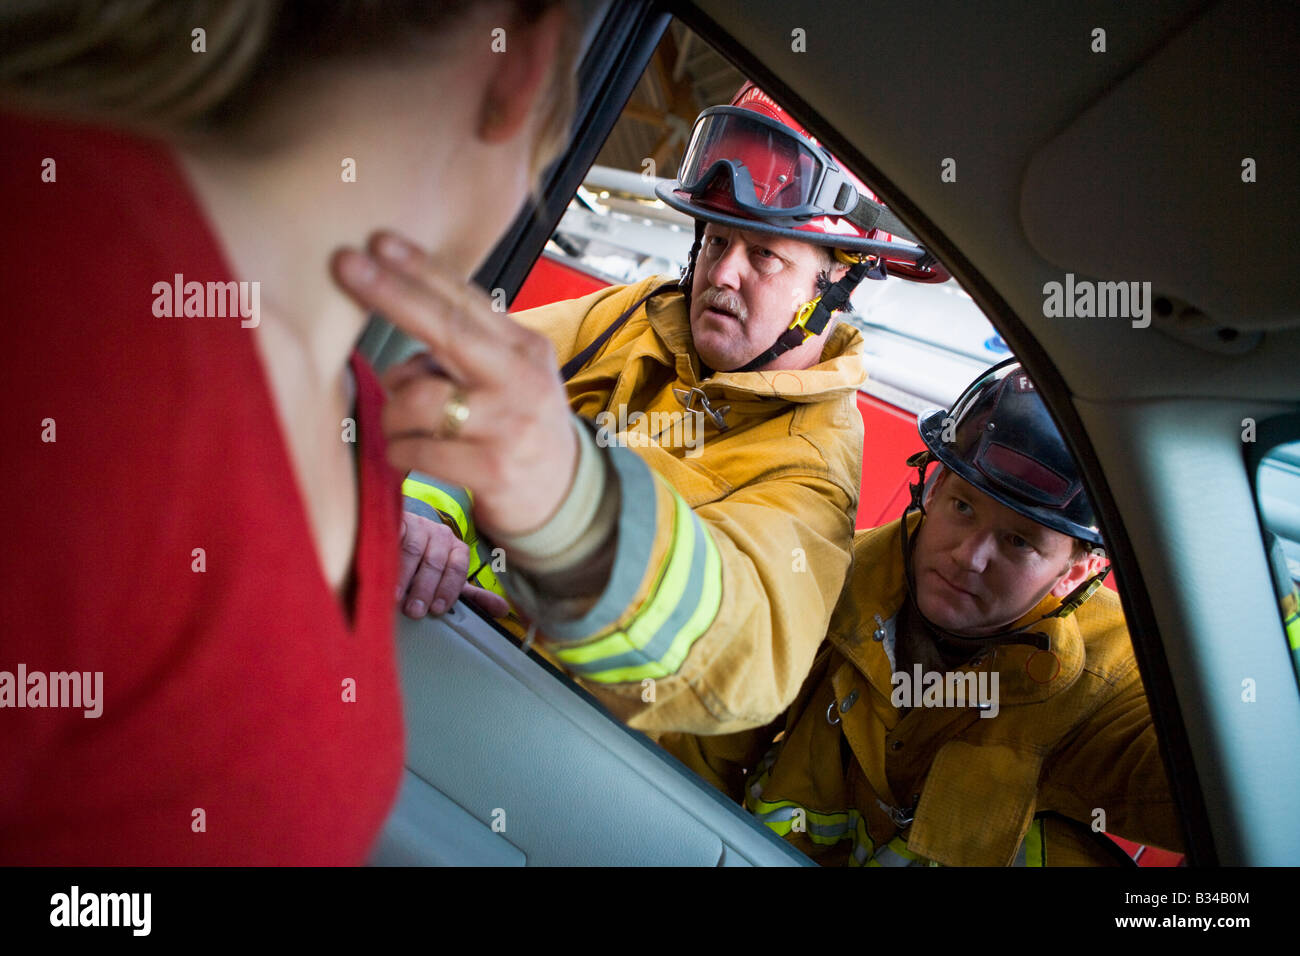 Feuerwehrmann Puls der Frau während einer anderen Feuerwehrmann Uhren (Tiefenschärfe) Stockfoto